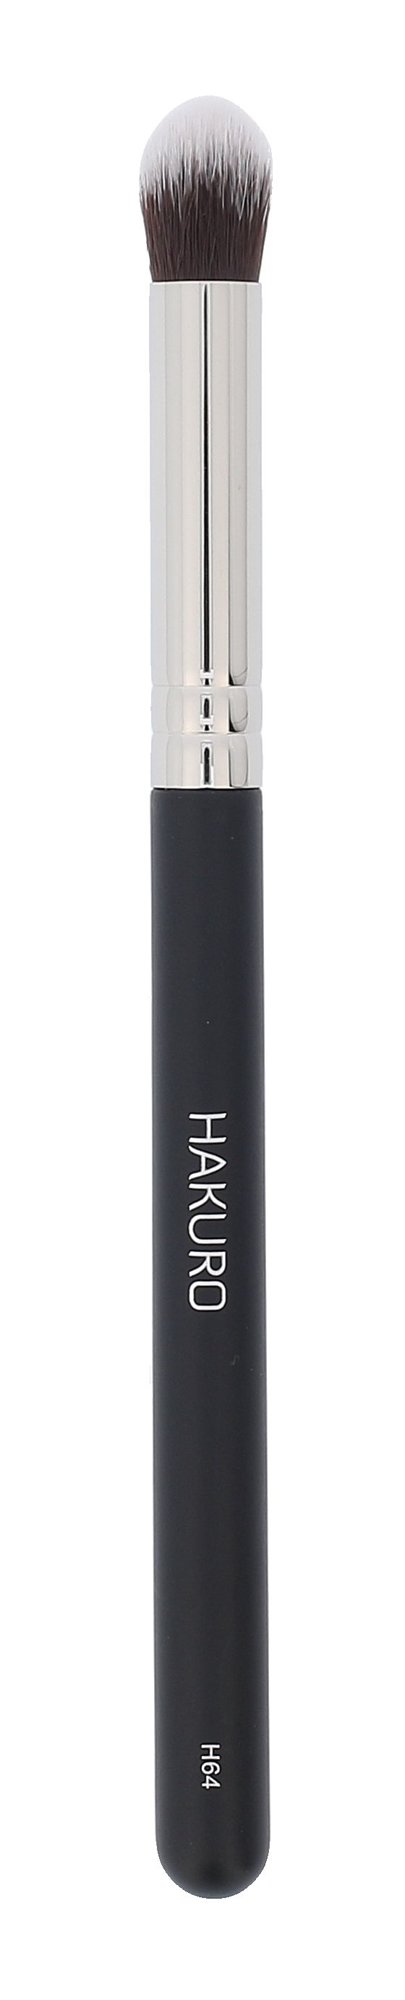 Hakuro Brush H64